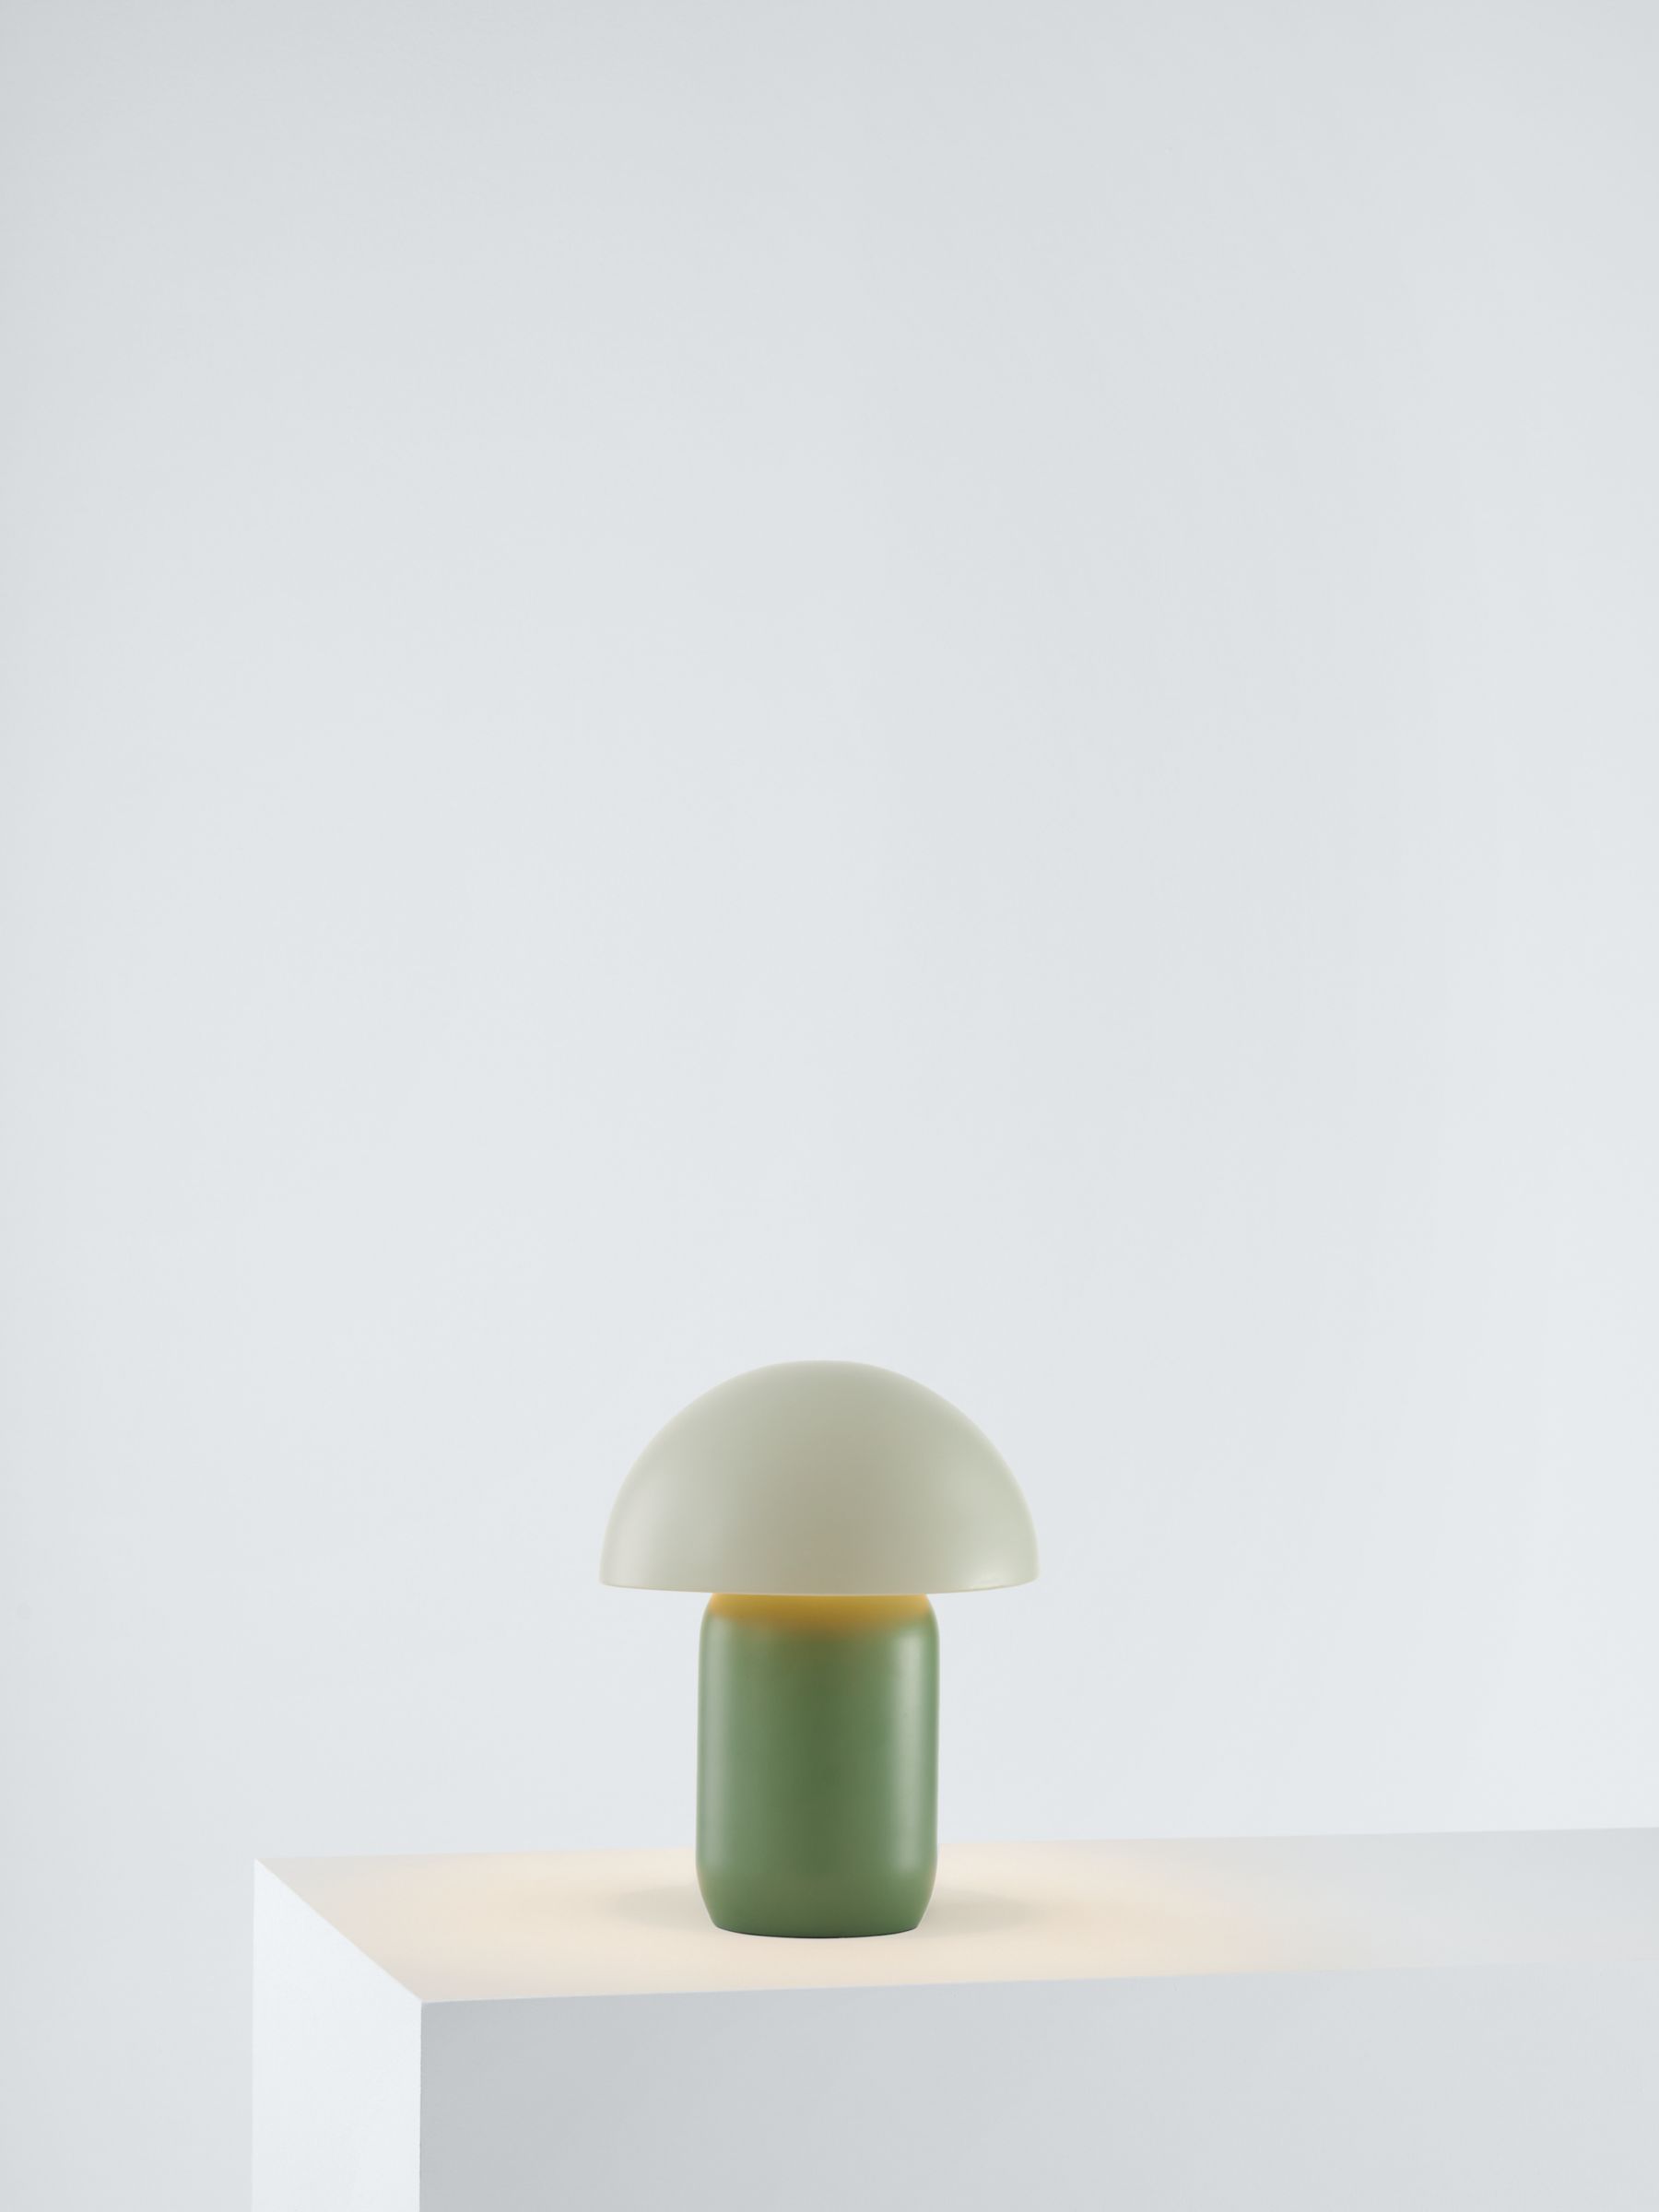 John Lewis Baldwin Desk Lamp, Dusty Green